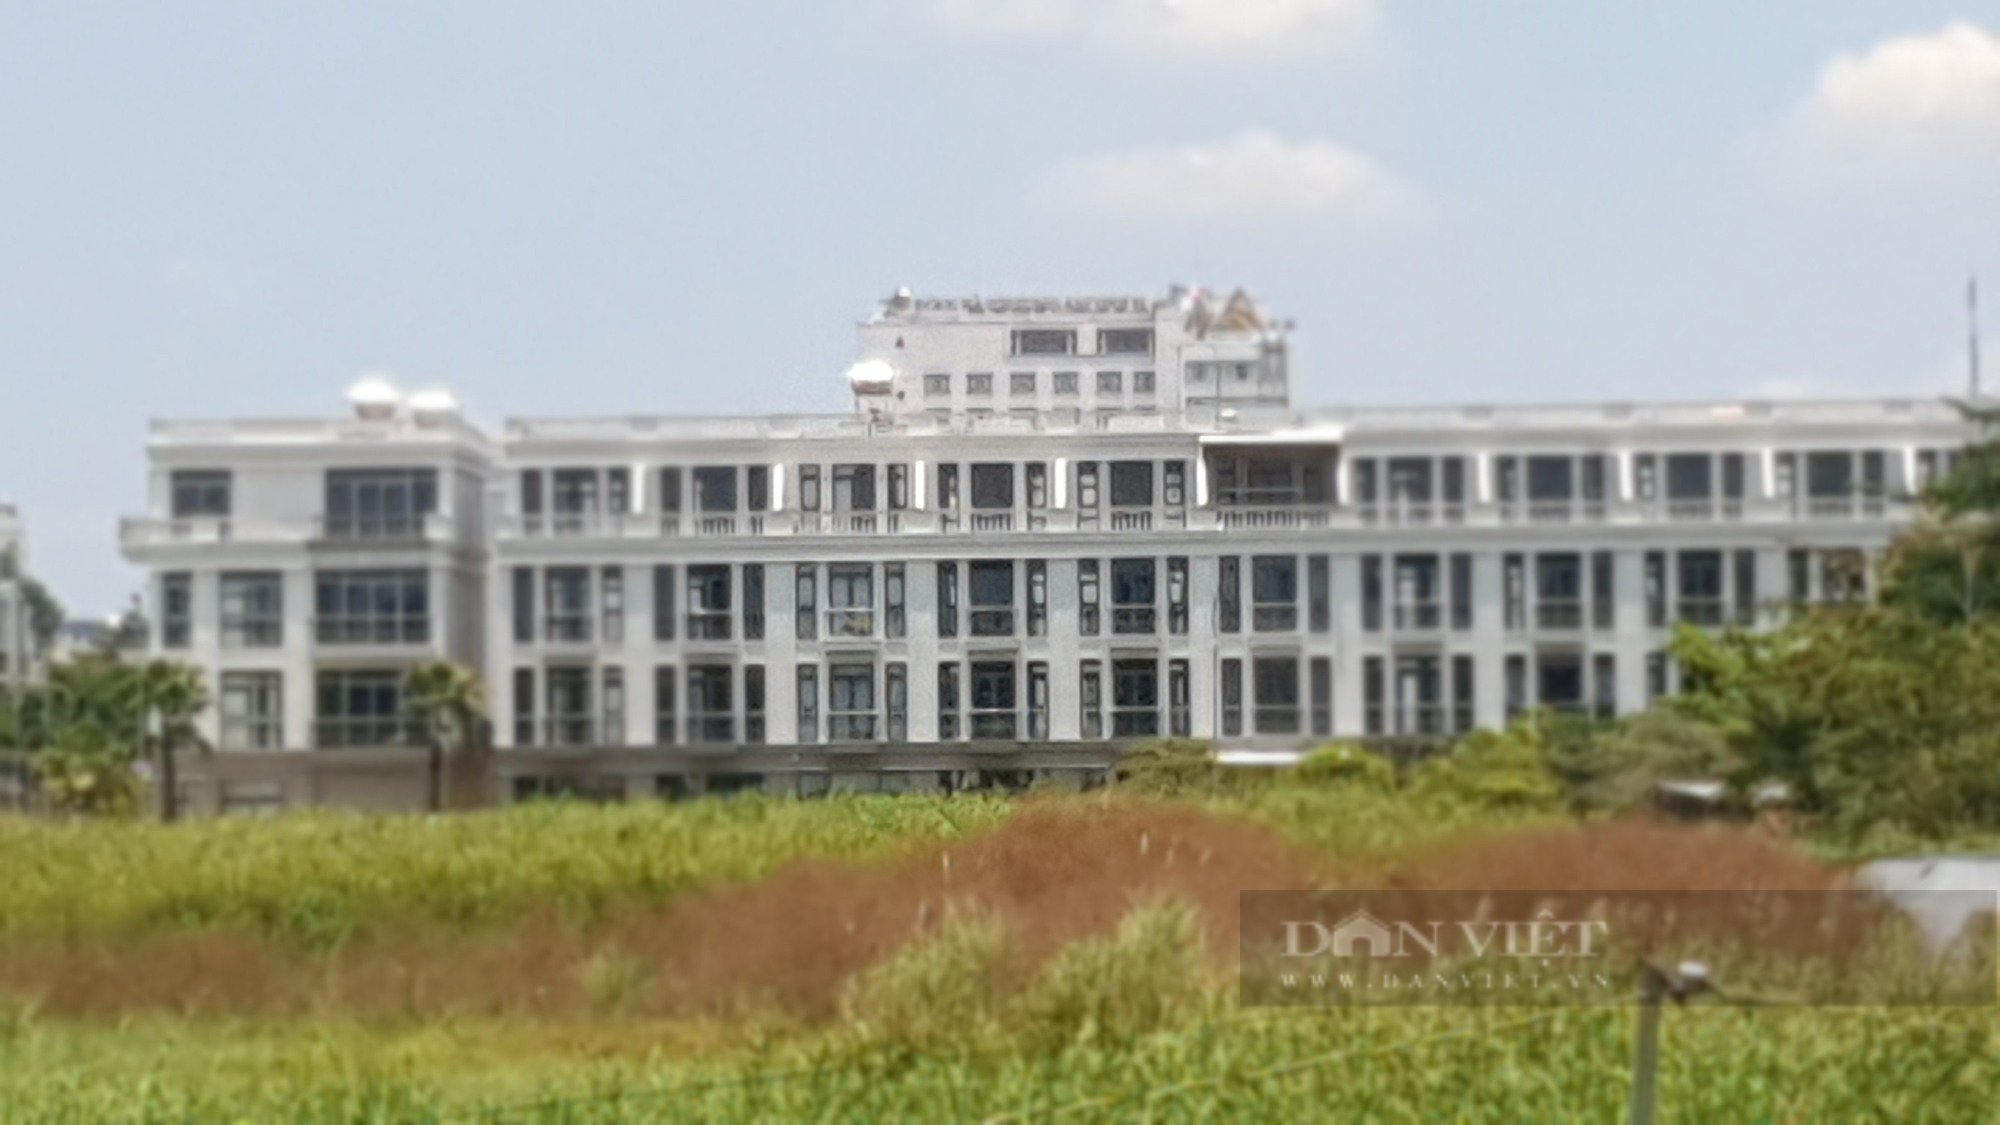 Chủ tịch Cần Thơ chỉ đạo kiểm tra dự án Trung tâm thương mại quy mô lớn tại quận Ninh Kiều - Ảnh 2.